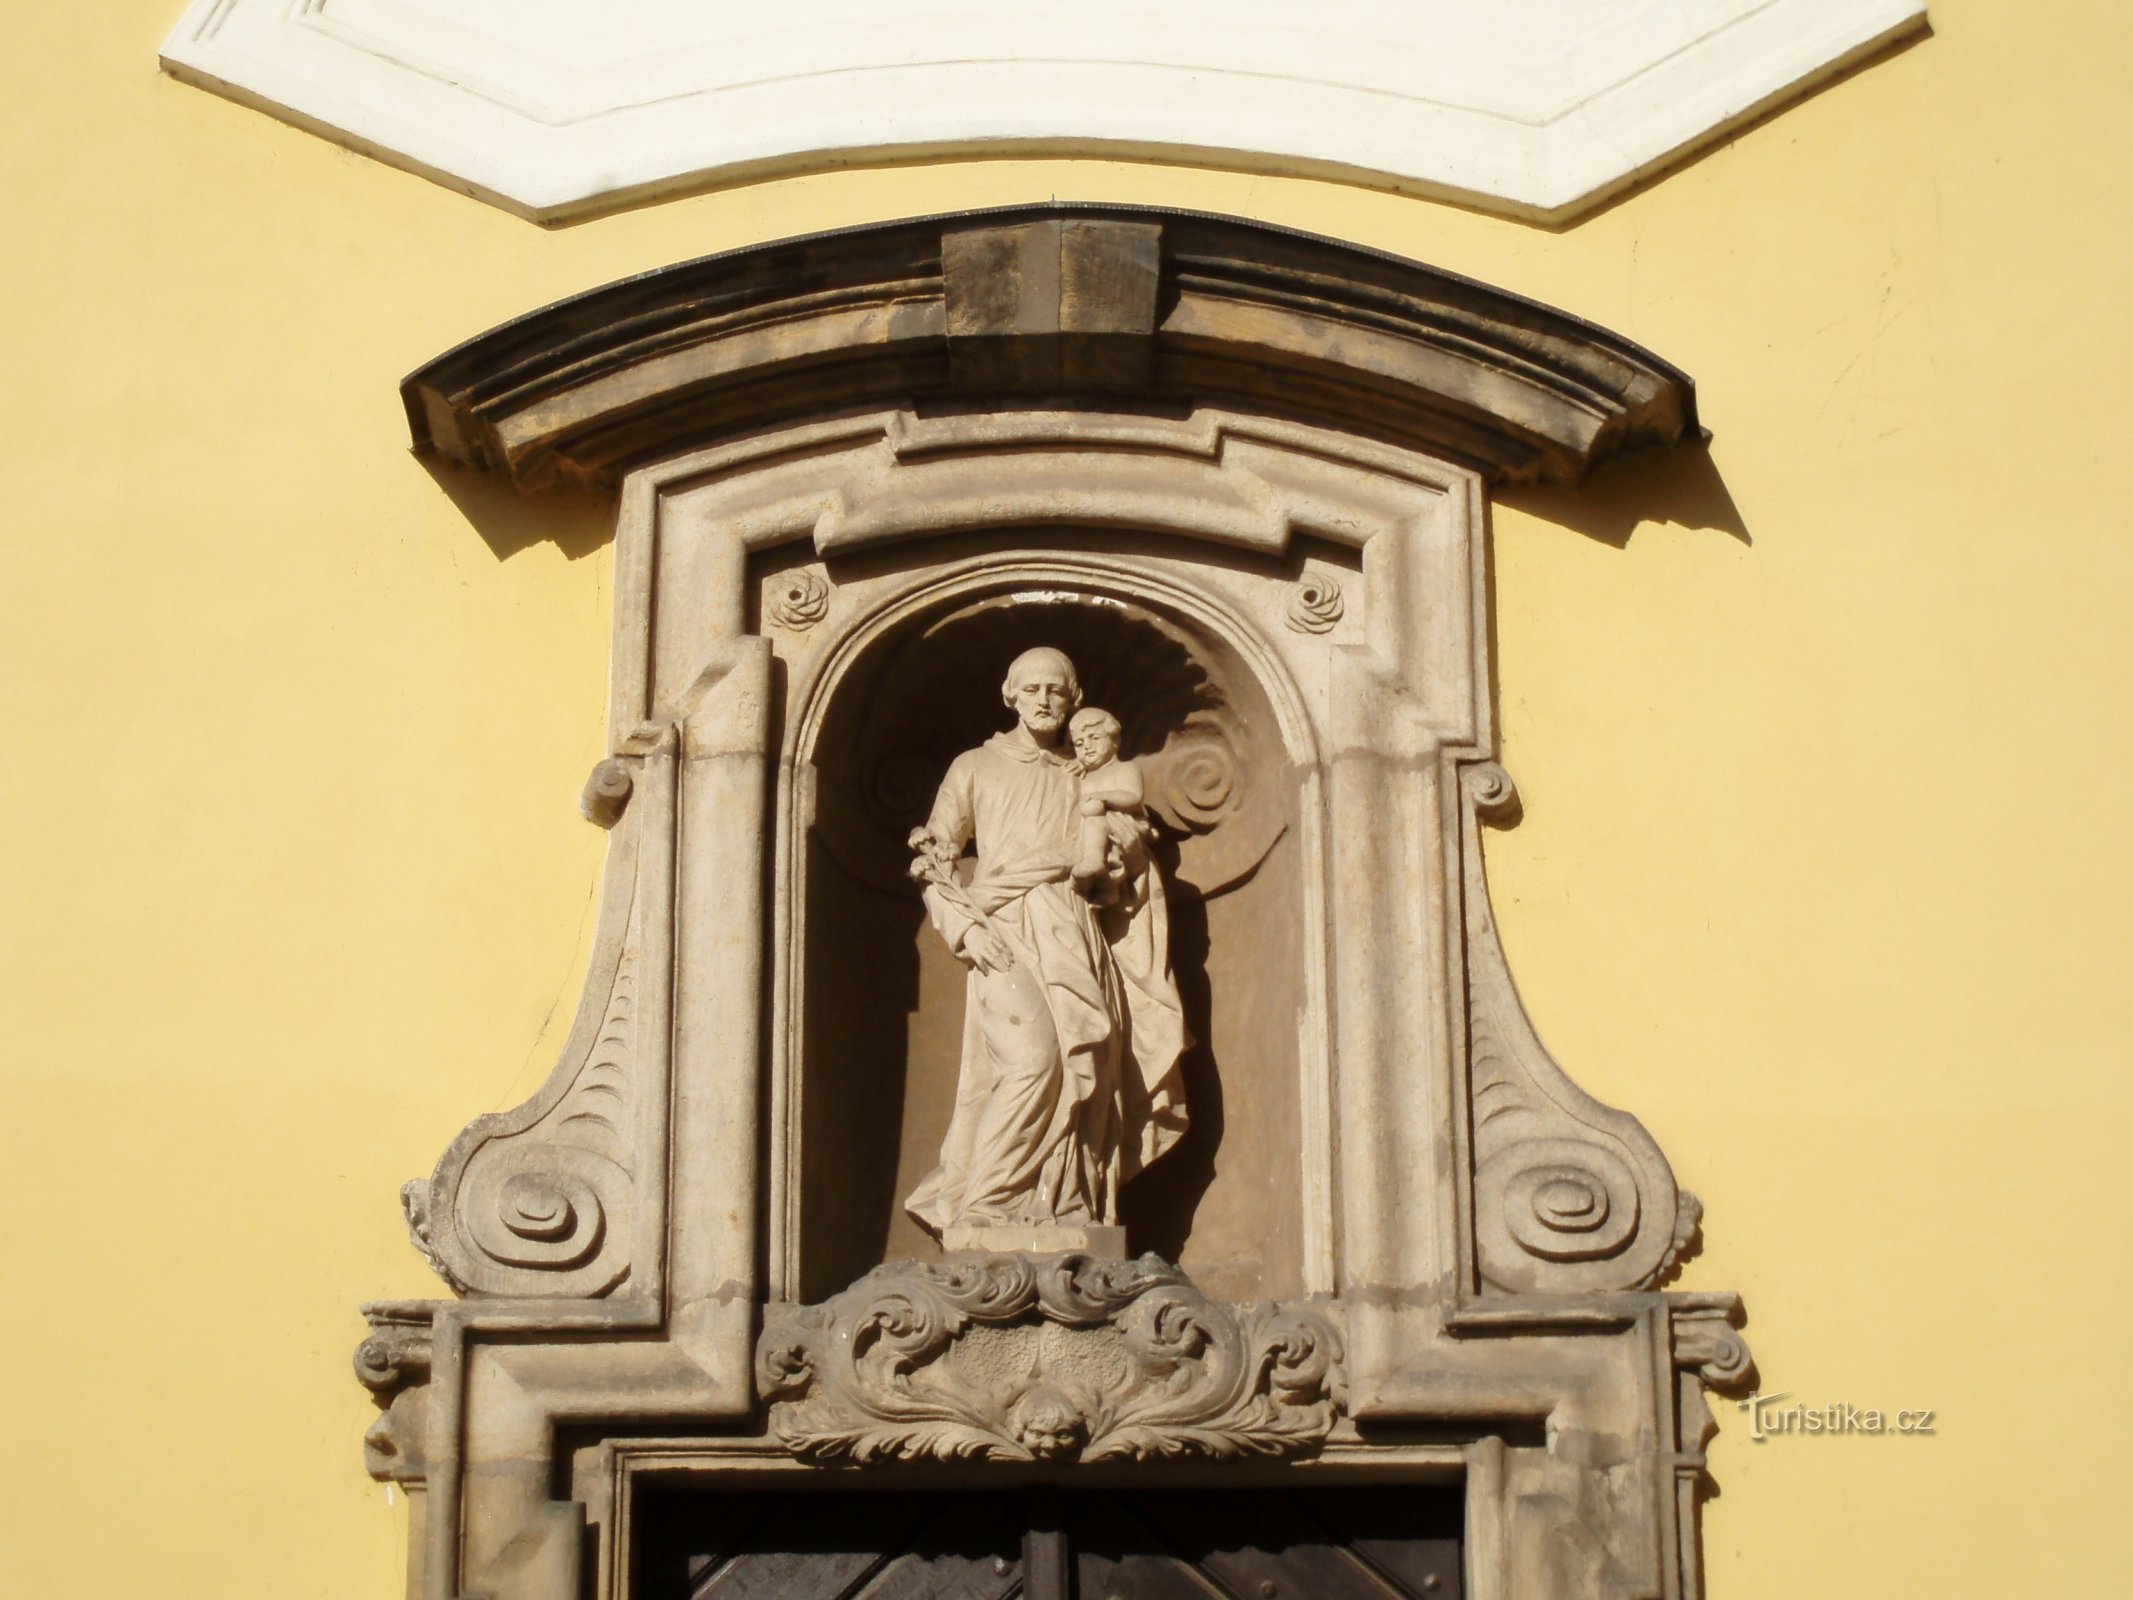 Зображення св. Йосифа над входом до каплиці того ж святого (Градец Кралове, 21.6.2009)